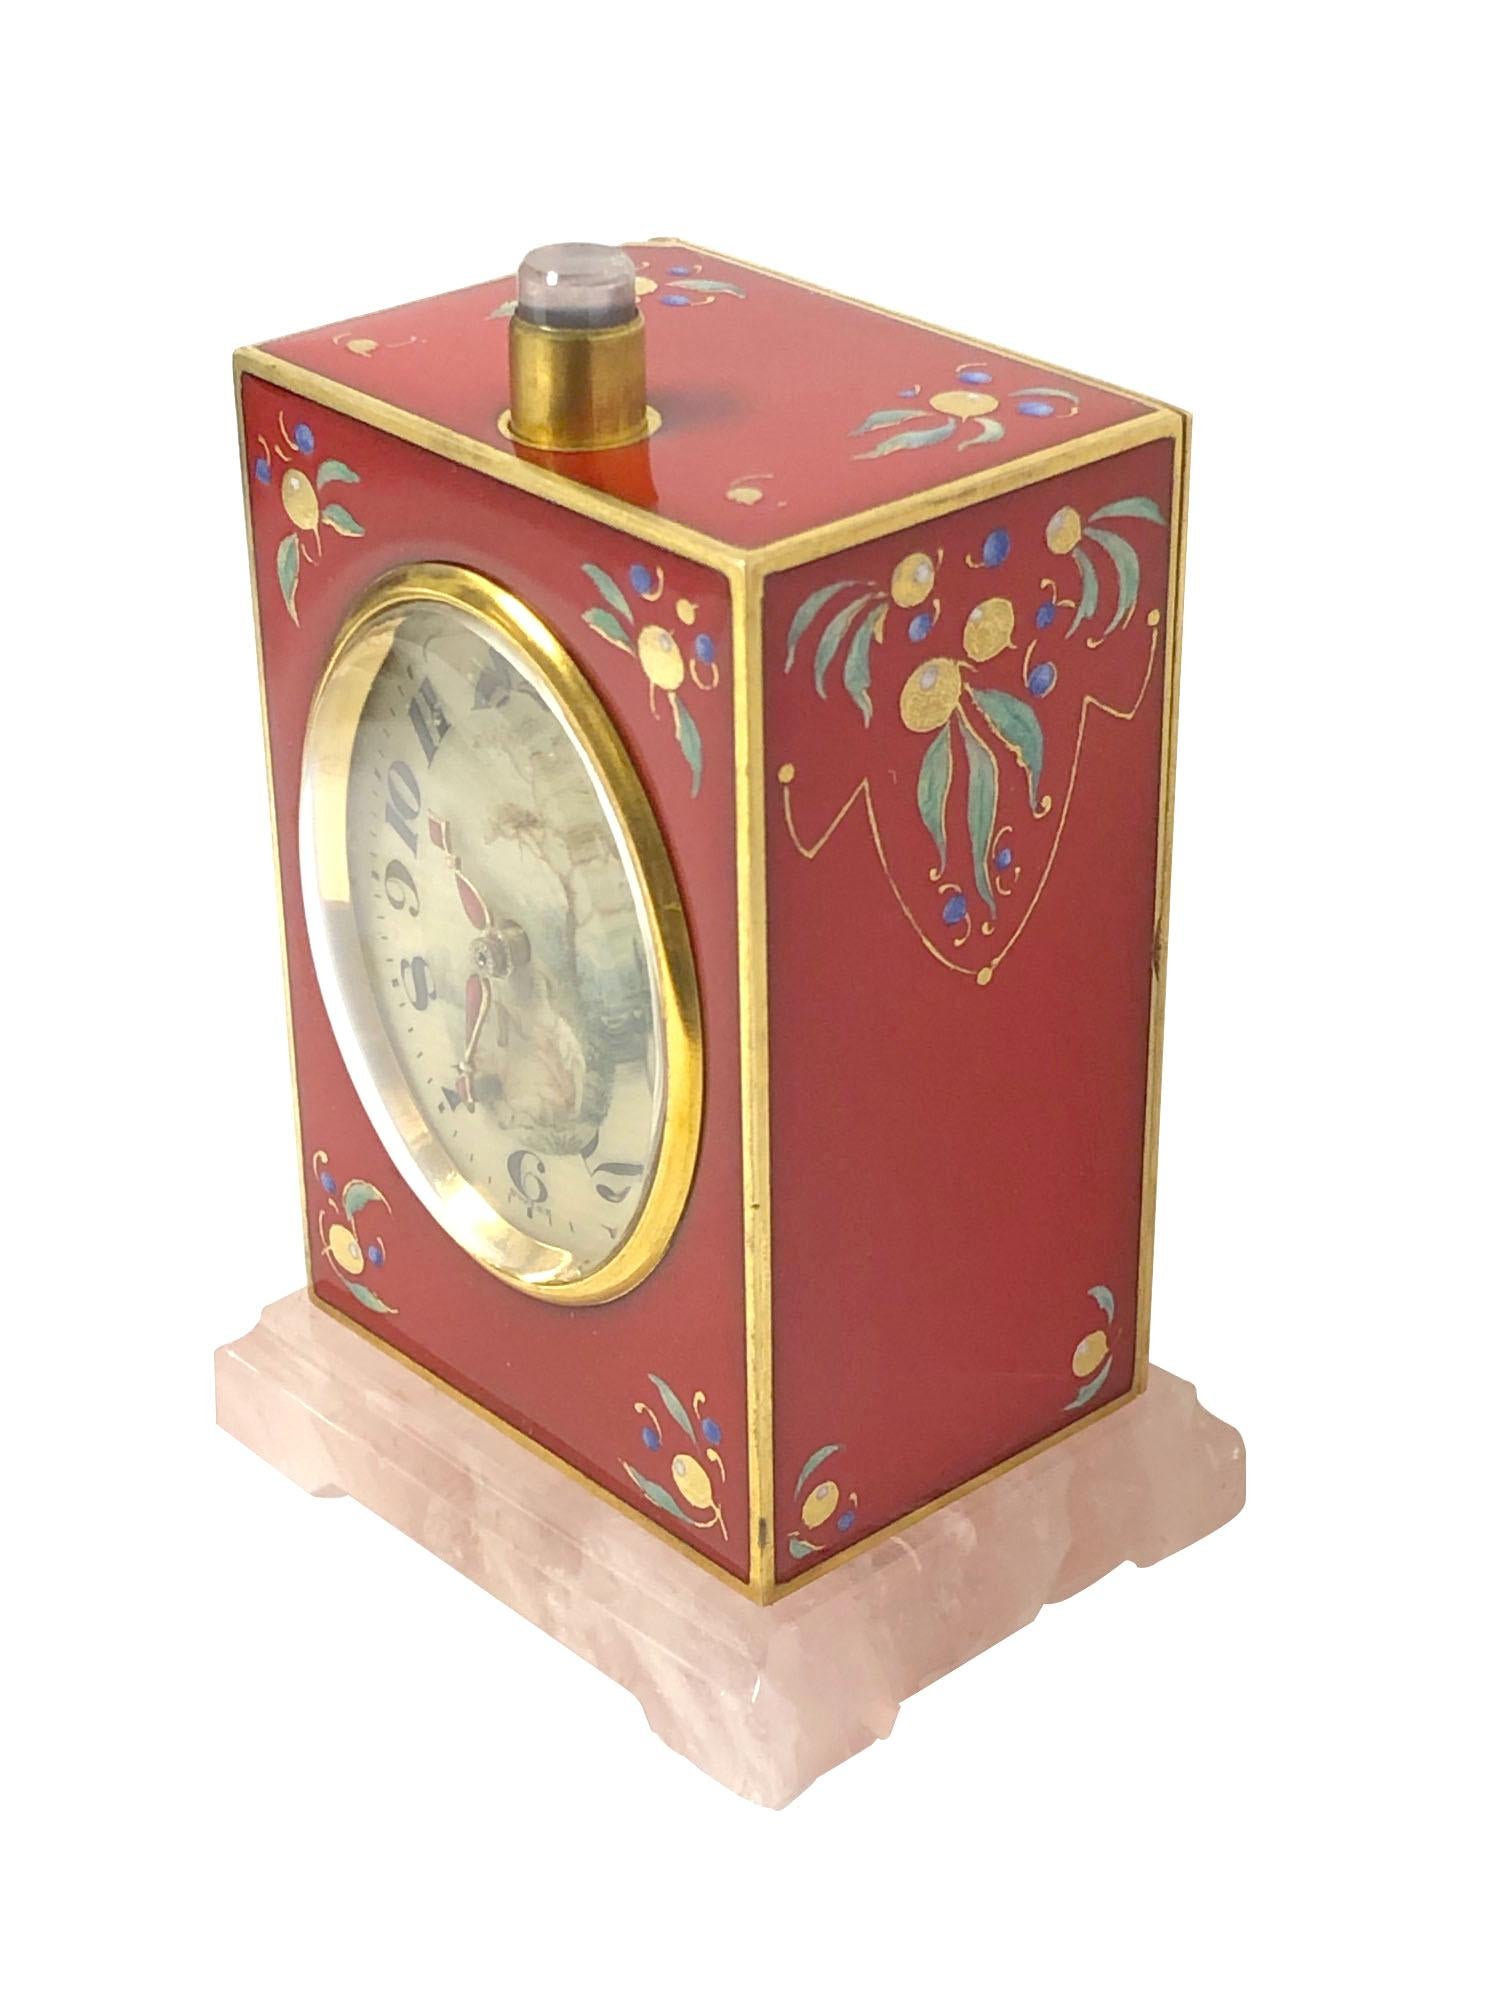 Circa 1920s Repeater Clock by D. Fresard Switzerland, Gold Gilt Sterling Silver case with Red Enamel measuring 3 X 2 X 1 1/4 inches, Rose Quartz Base and a Rose Quartz push on the case top. Mouvement à vent à clé de 11 Jewell, 8 jours, avec